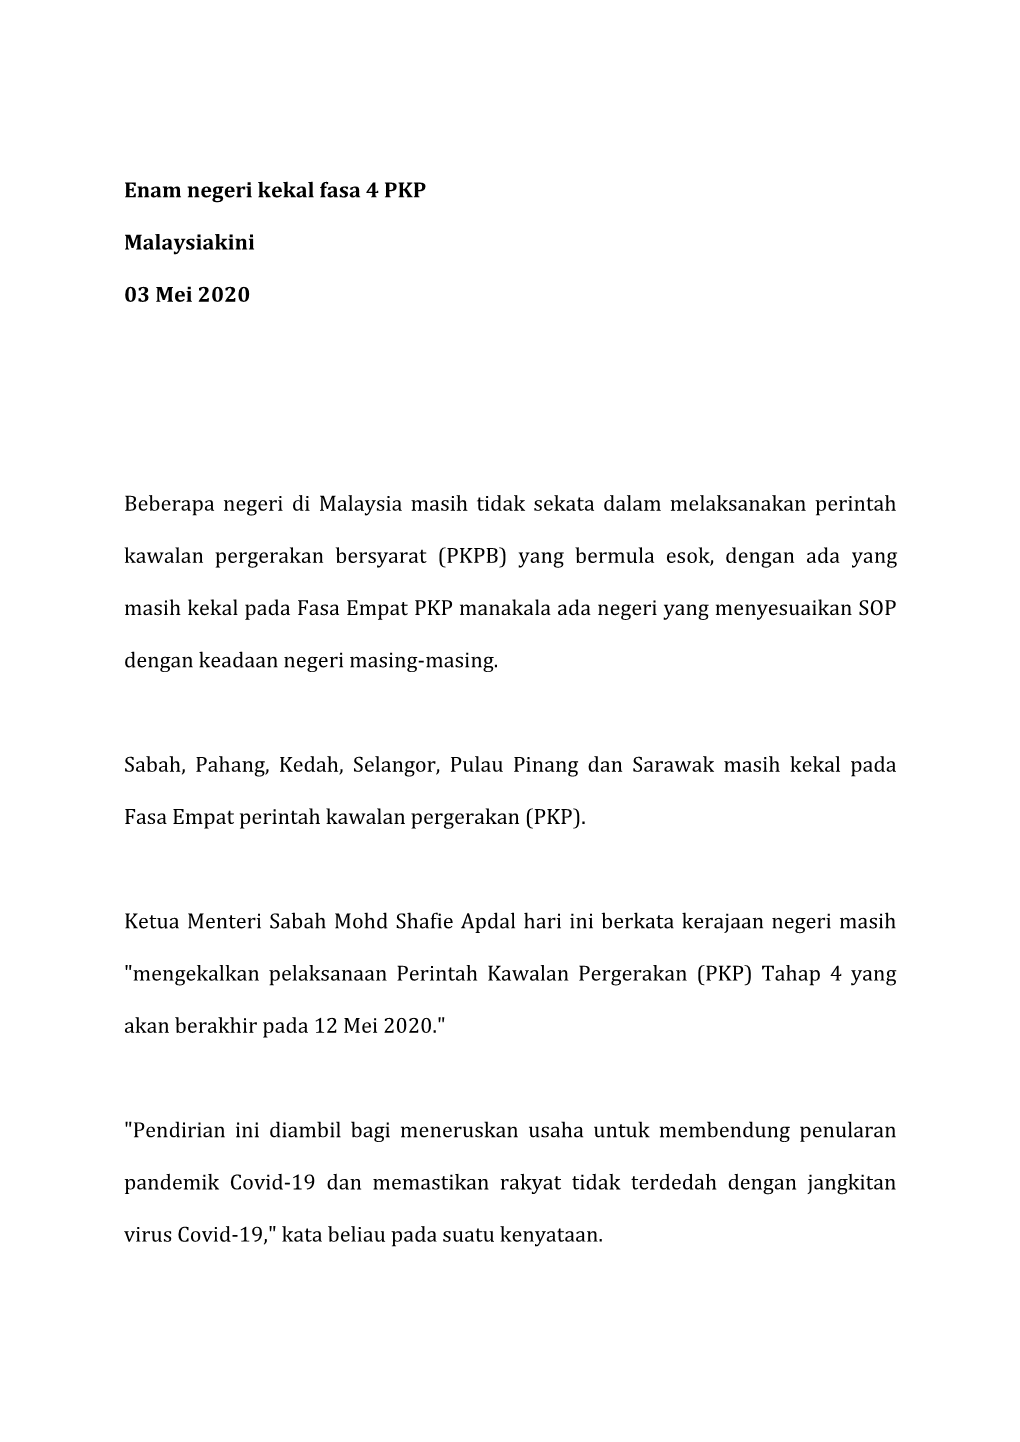 Enam Negeri Kekal Fasa 4 PKP Malaysiakini 03 Mei 2020 Beberapa